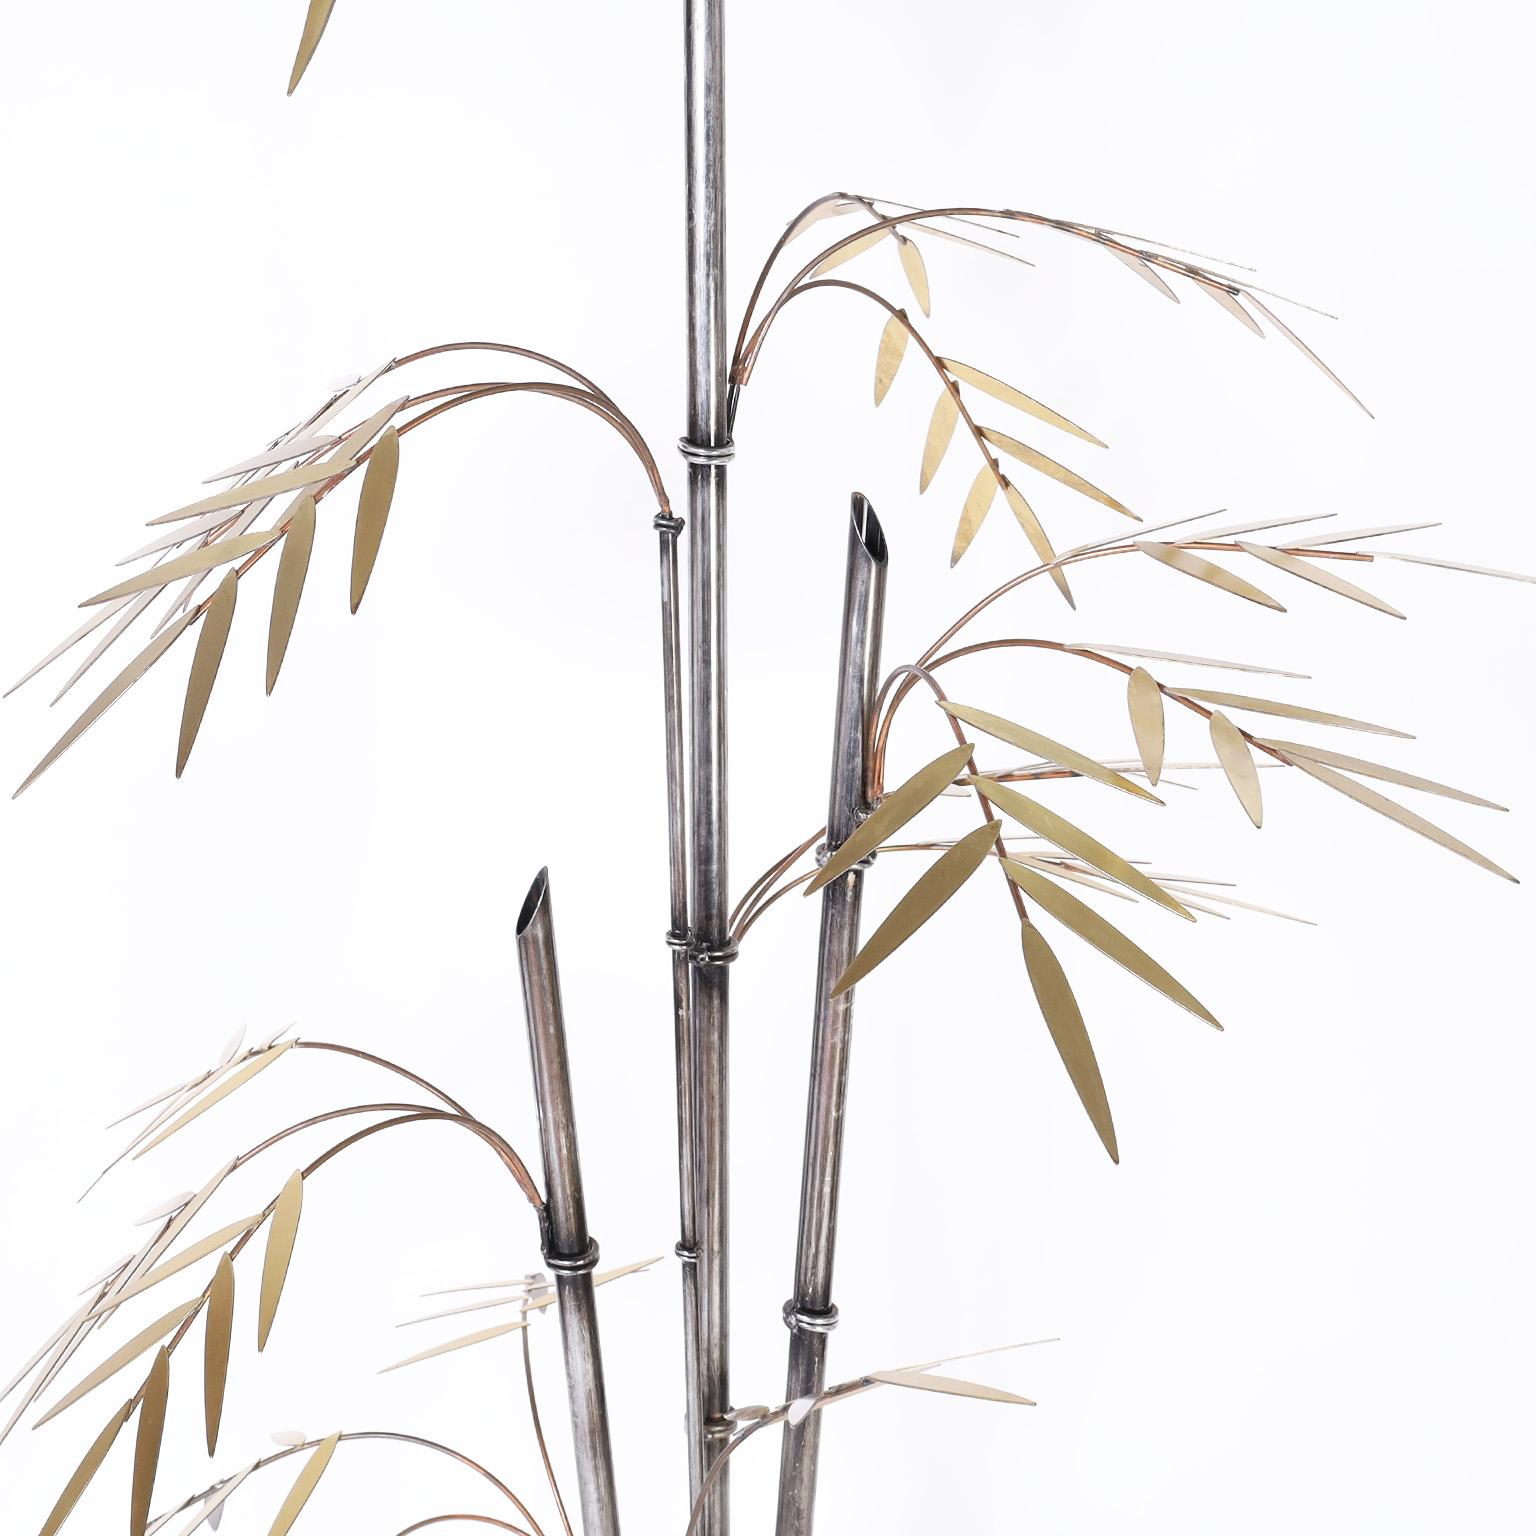 Illuminated Bamboo Tree Sculpture 2